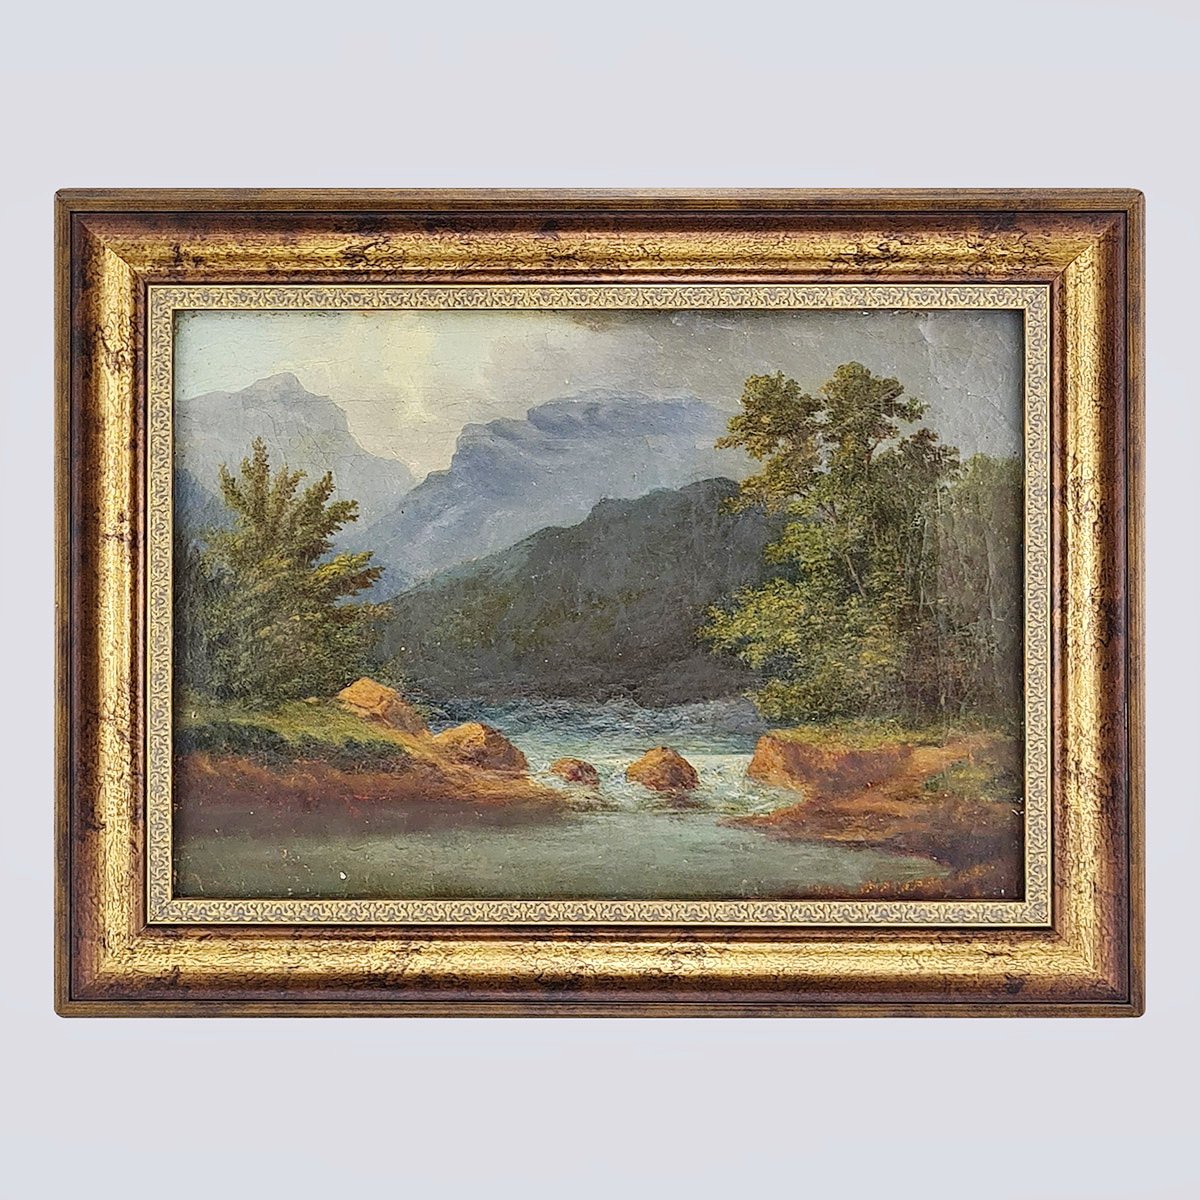 Картина «Пейзаж с горной рекой» нач. 20 века, Зап. Европа, холст, масло